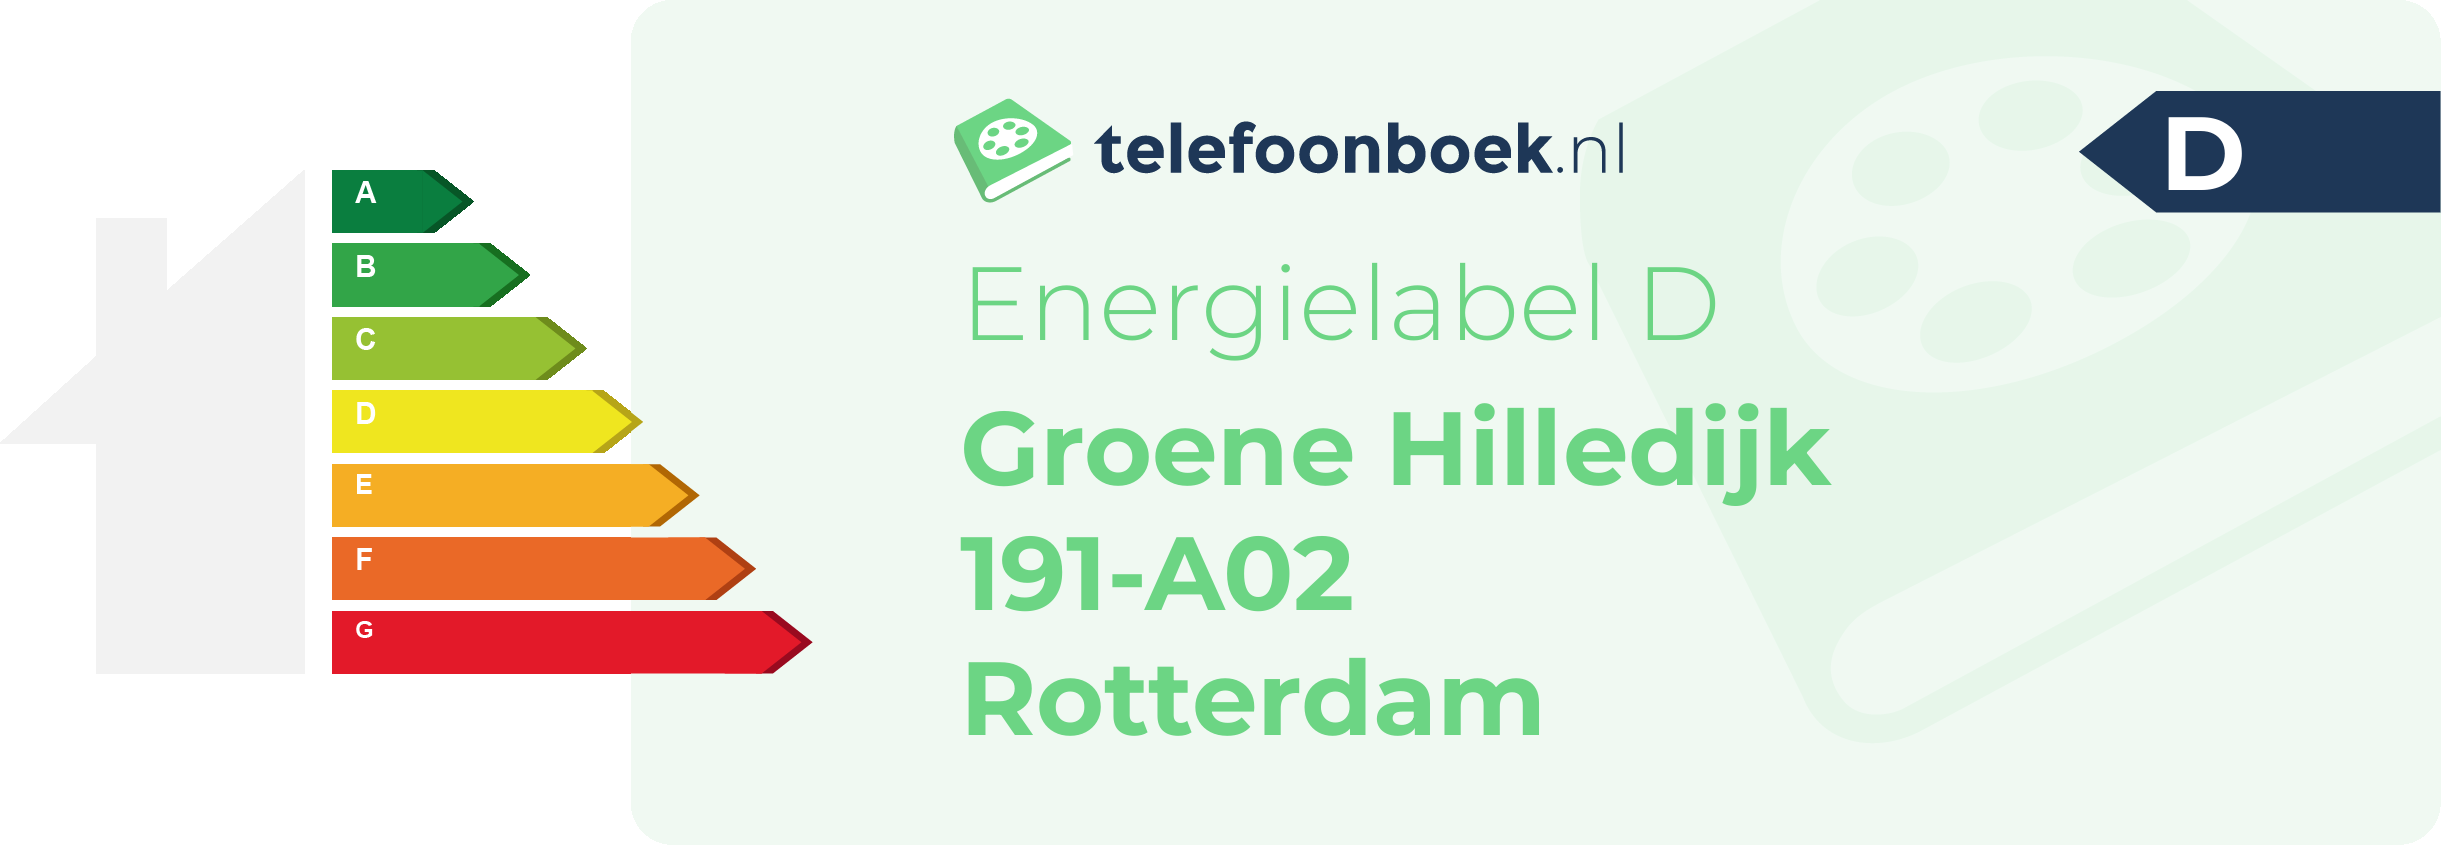 Energielabel Groene Hilledijk 191-A02 Rotterdam